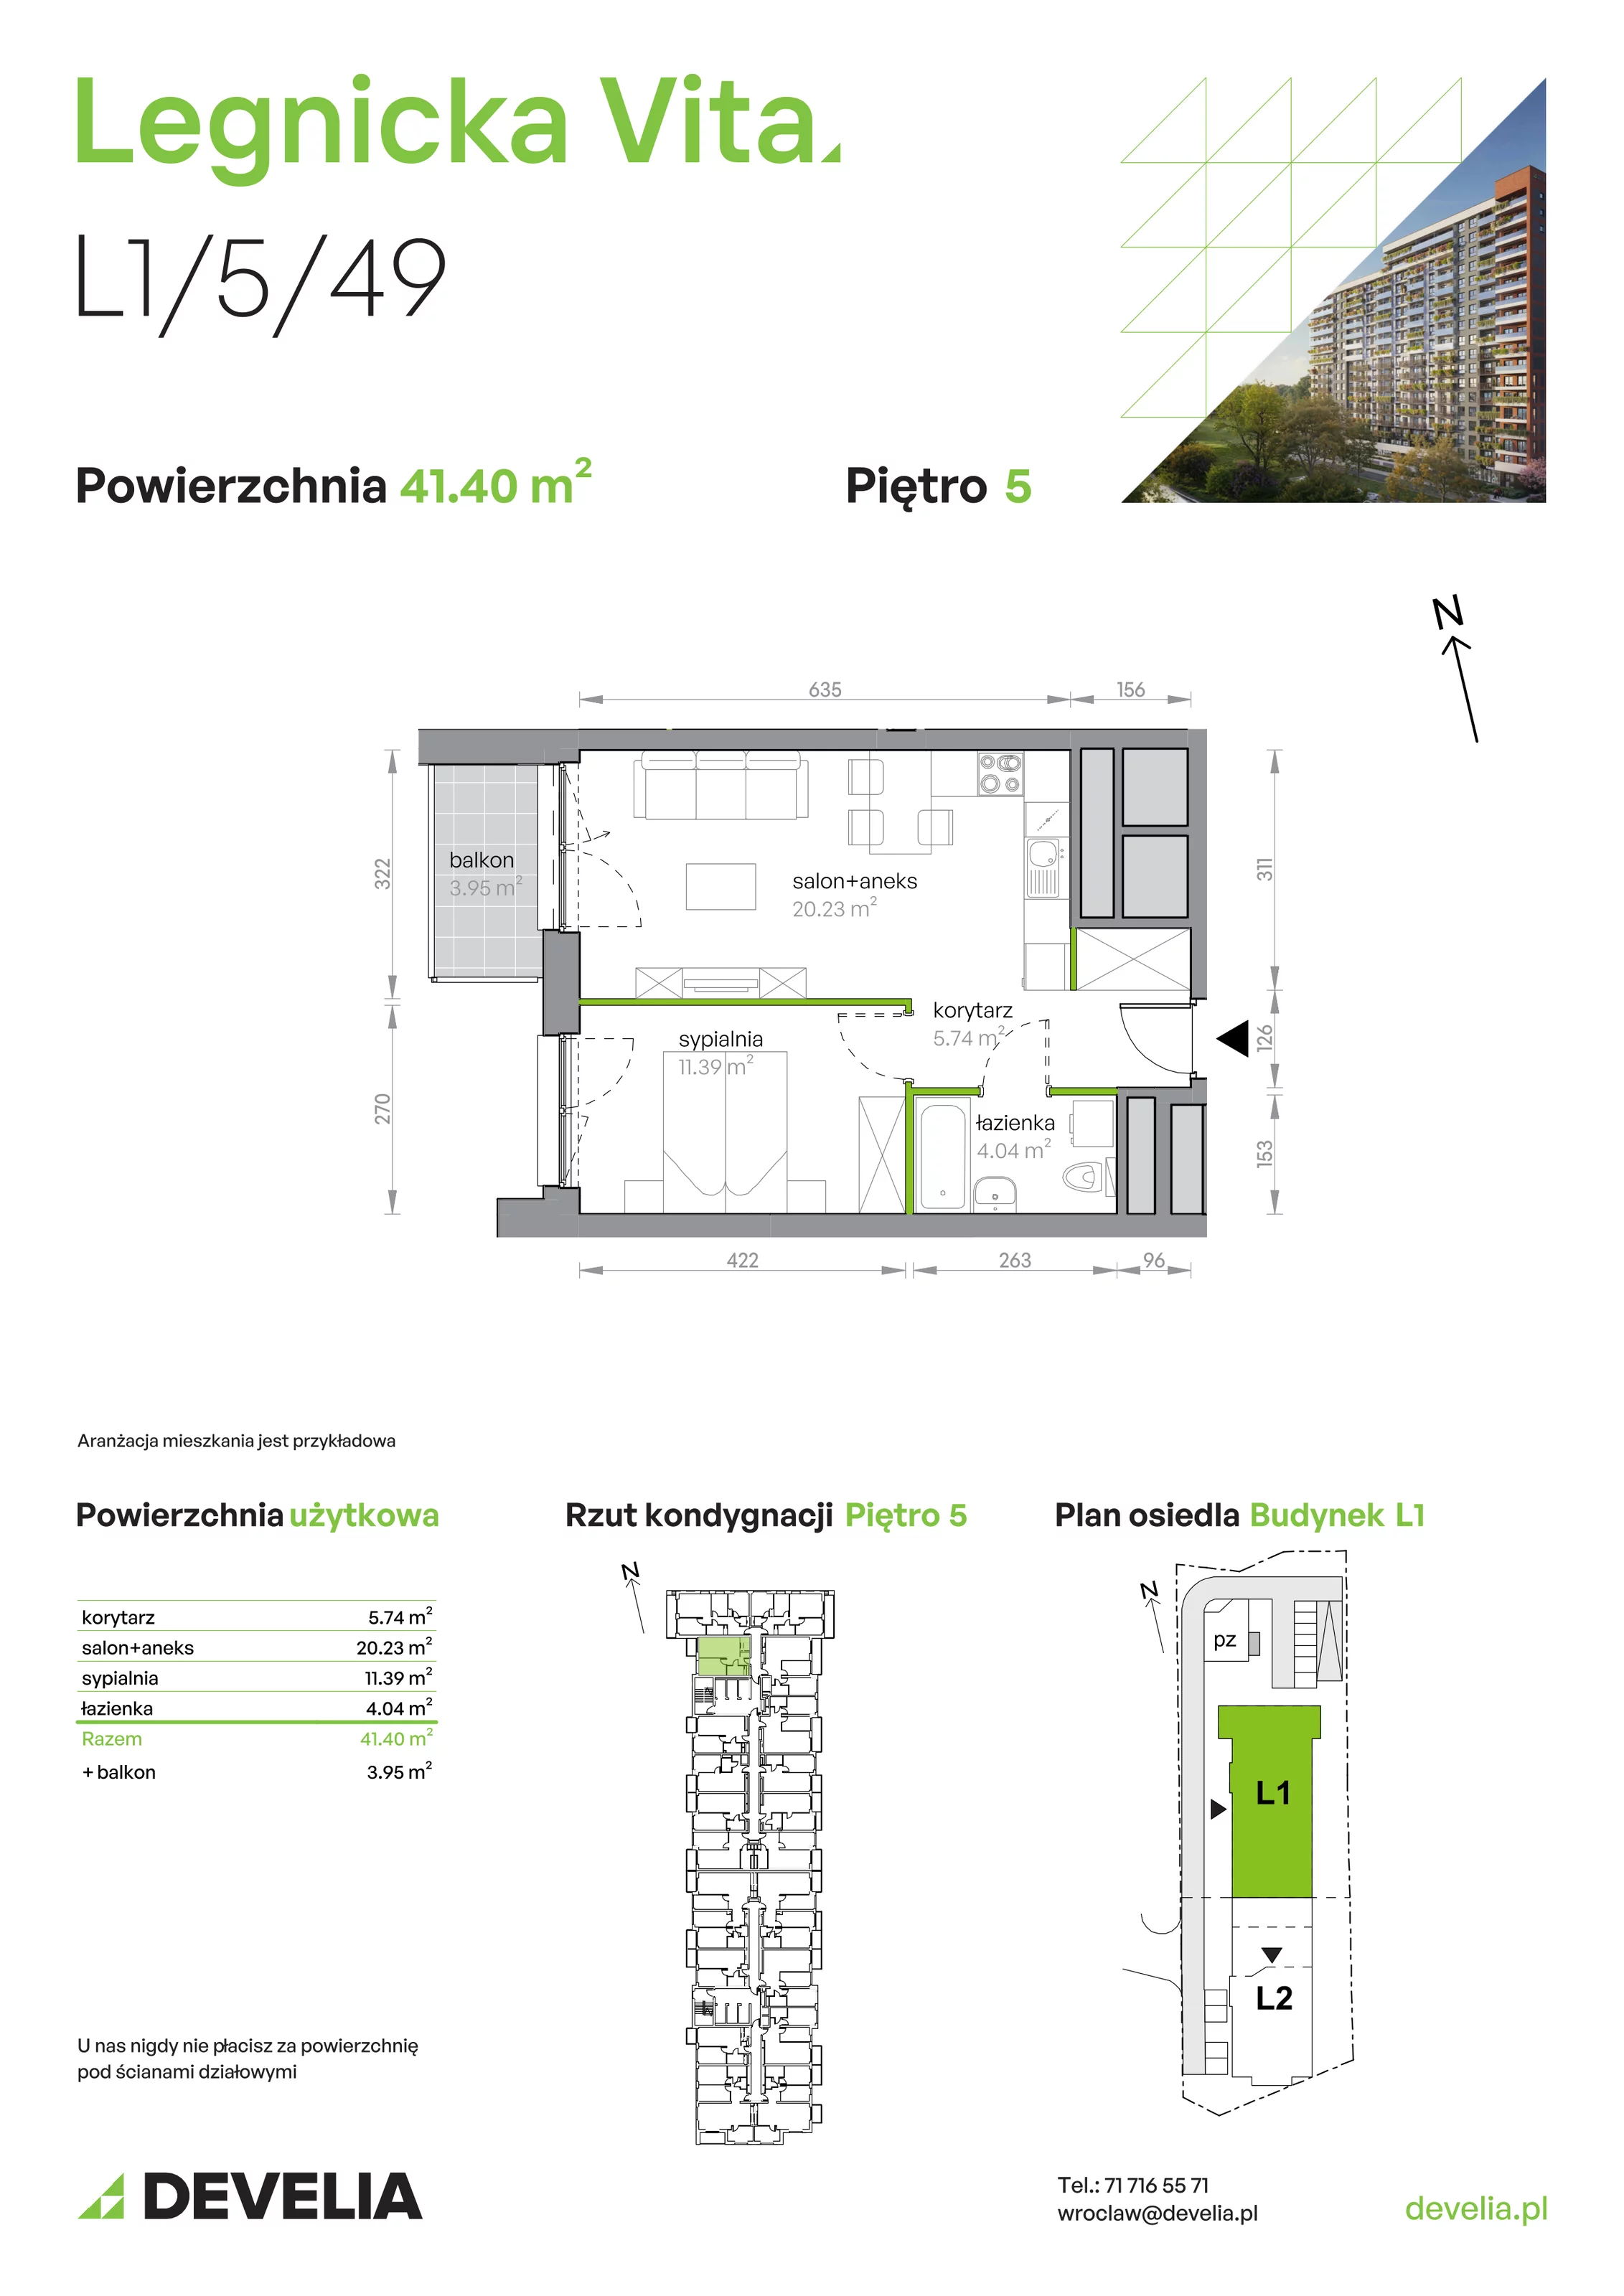 Mieszkanie 41,40 m², piętro 5, oferta nr L1/5/49, Legnicka Vita, Wrocław, Gądów-Popowice Południowe, Popowice, ul. Legnicka 52 A